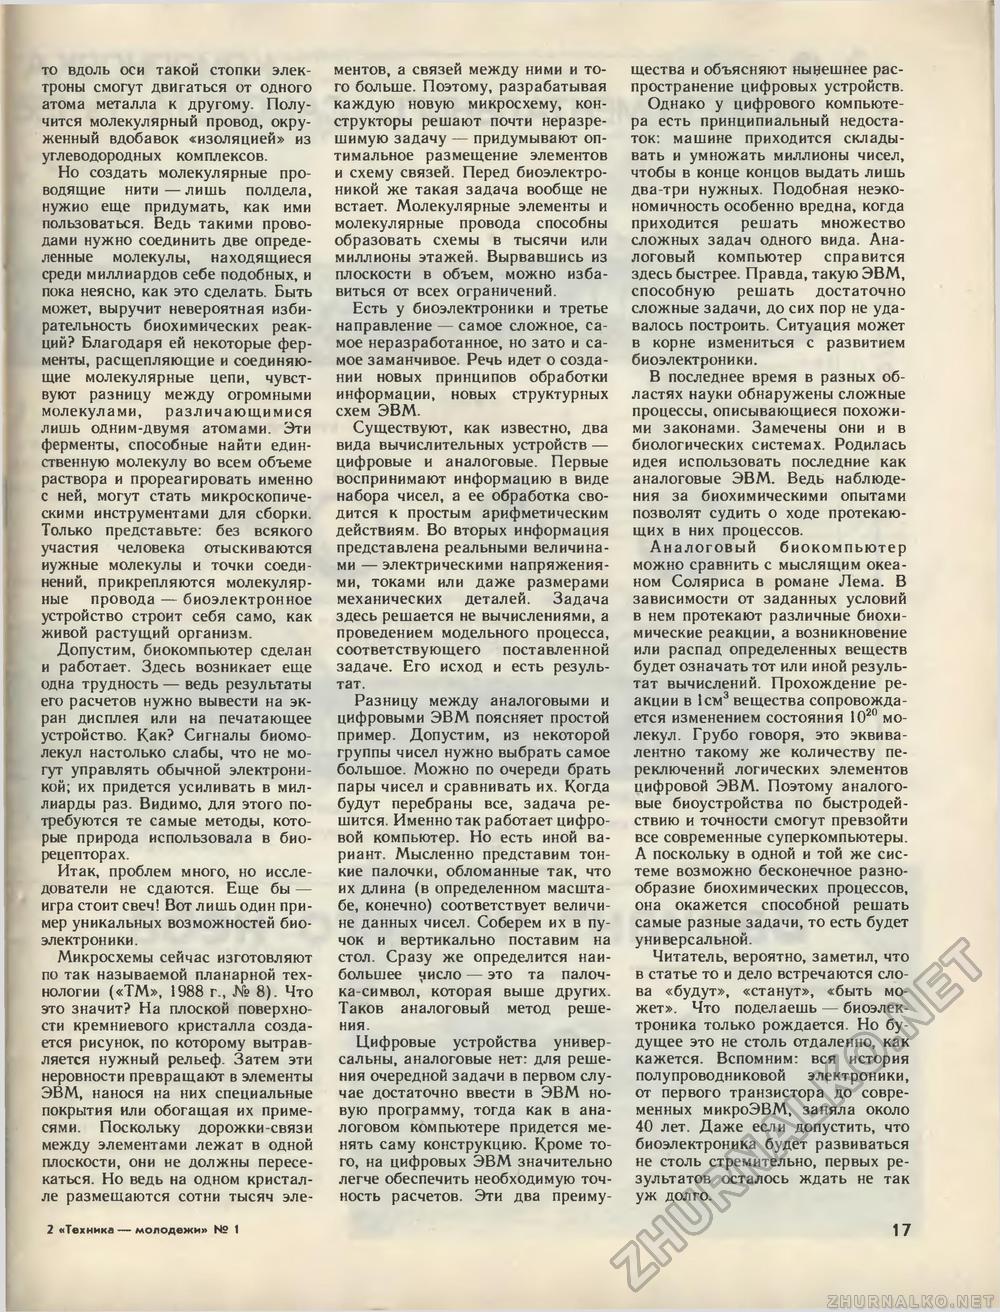  -  1989-01,  19